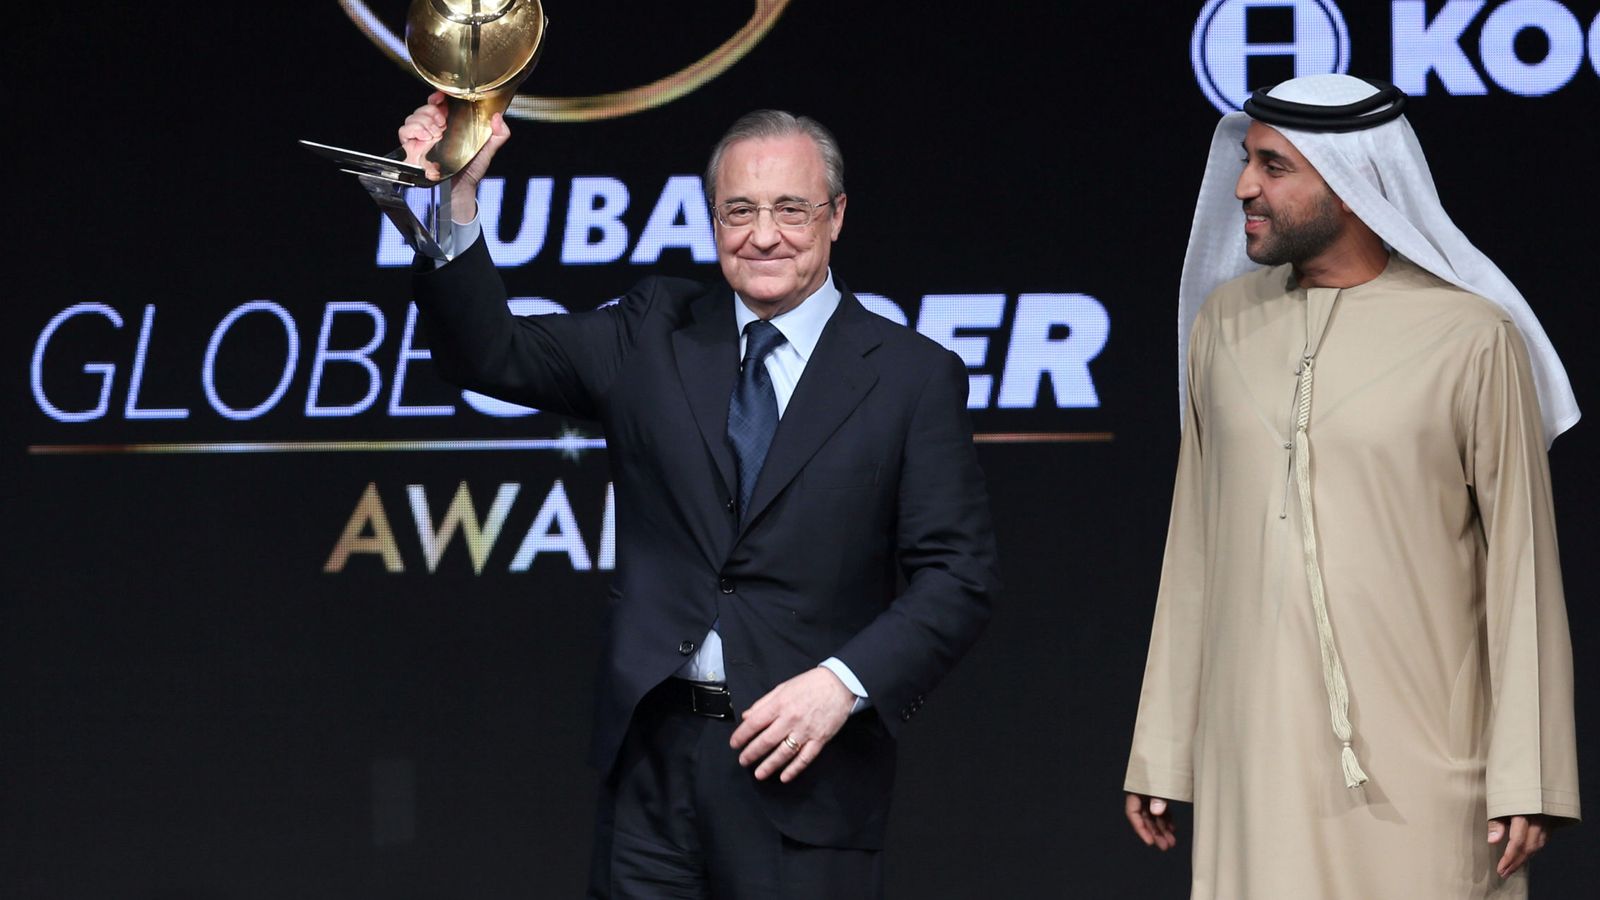 Foto: Florentino Pérez, presidente del Real Madrid, recibe un premio al mejor club del año, en Dubai. (REUTERS)